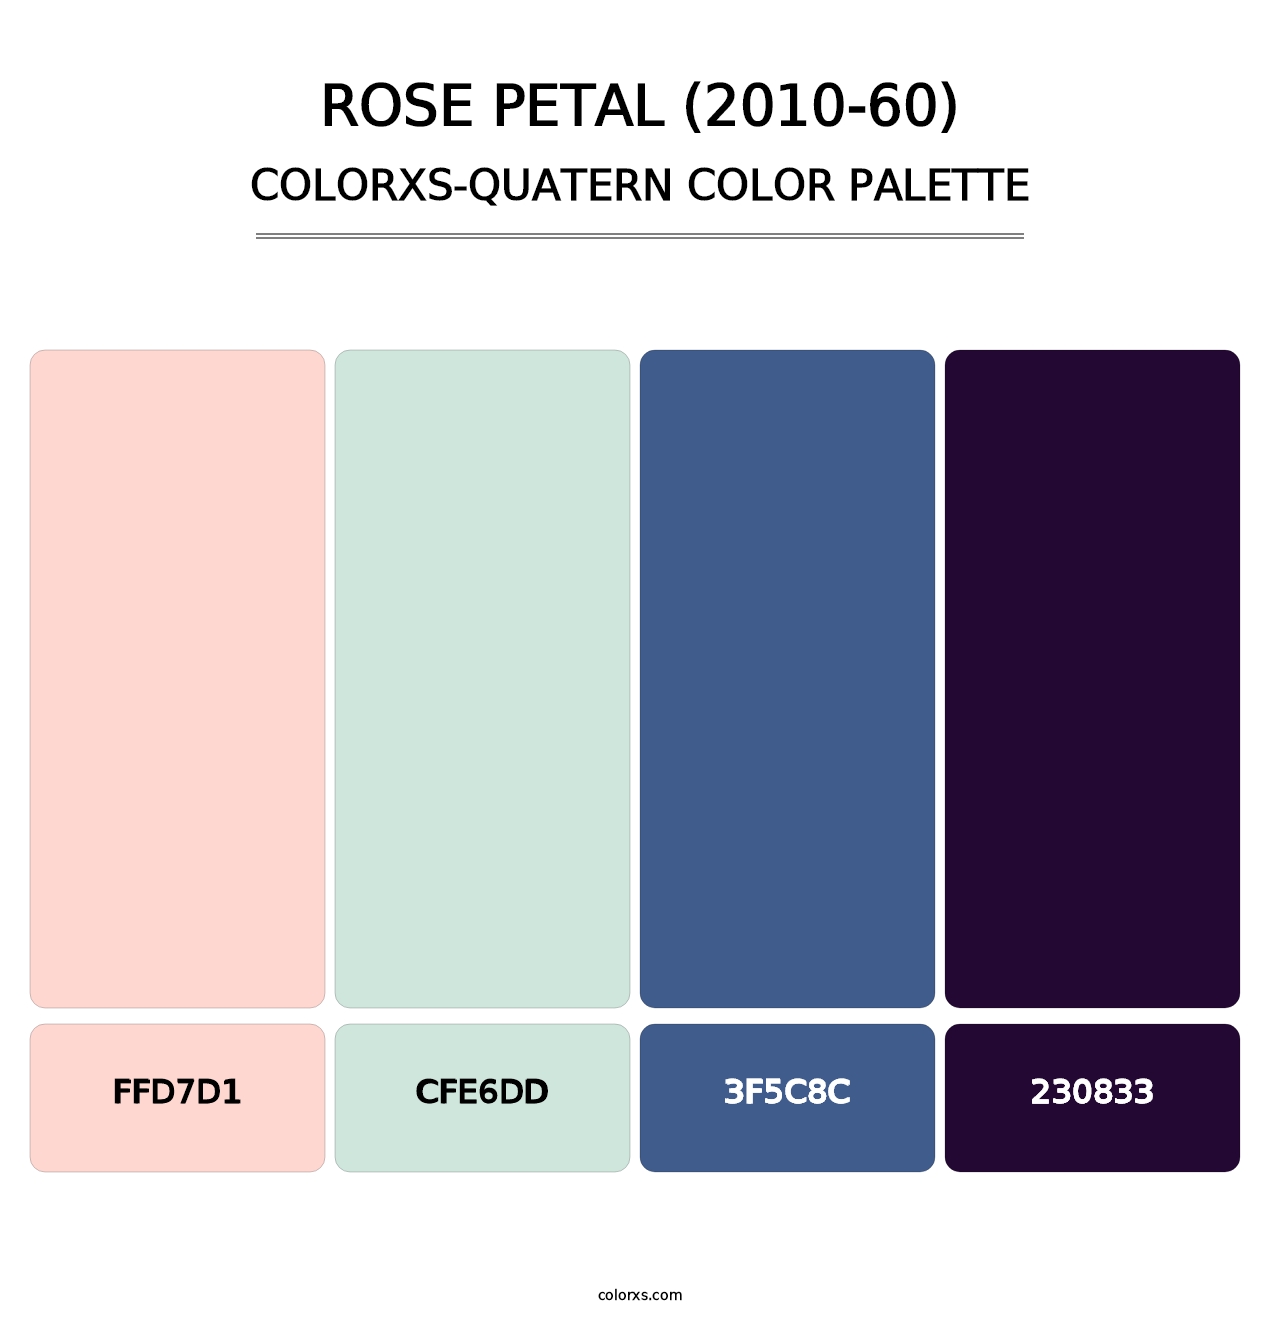 Rose Petal (2010-60) - Colorxs Quatern Palette